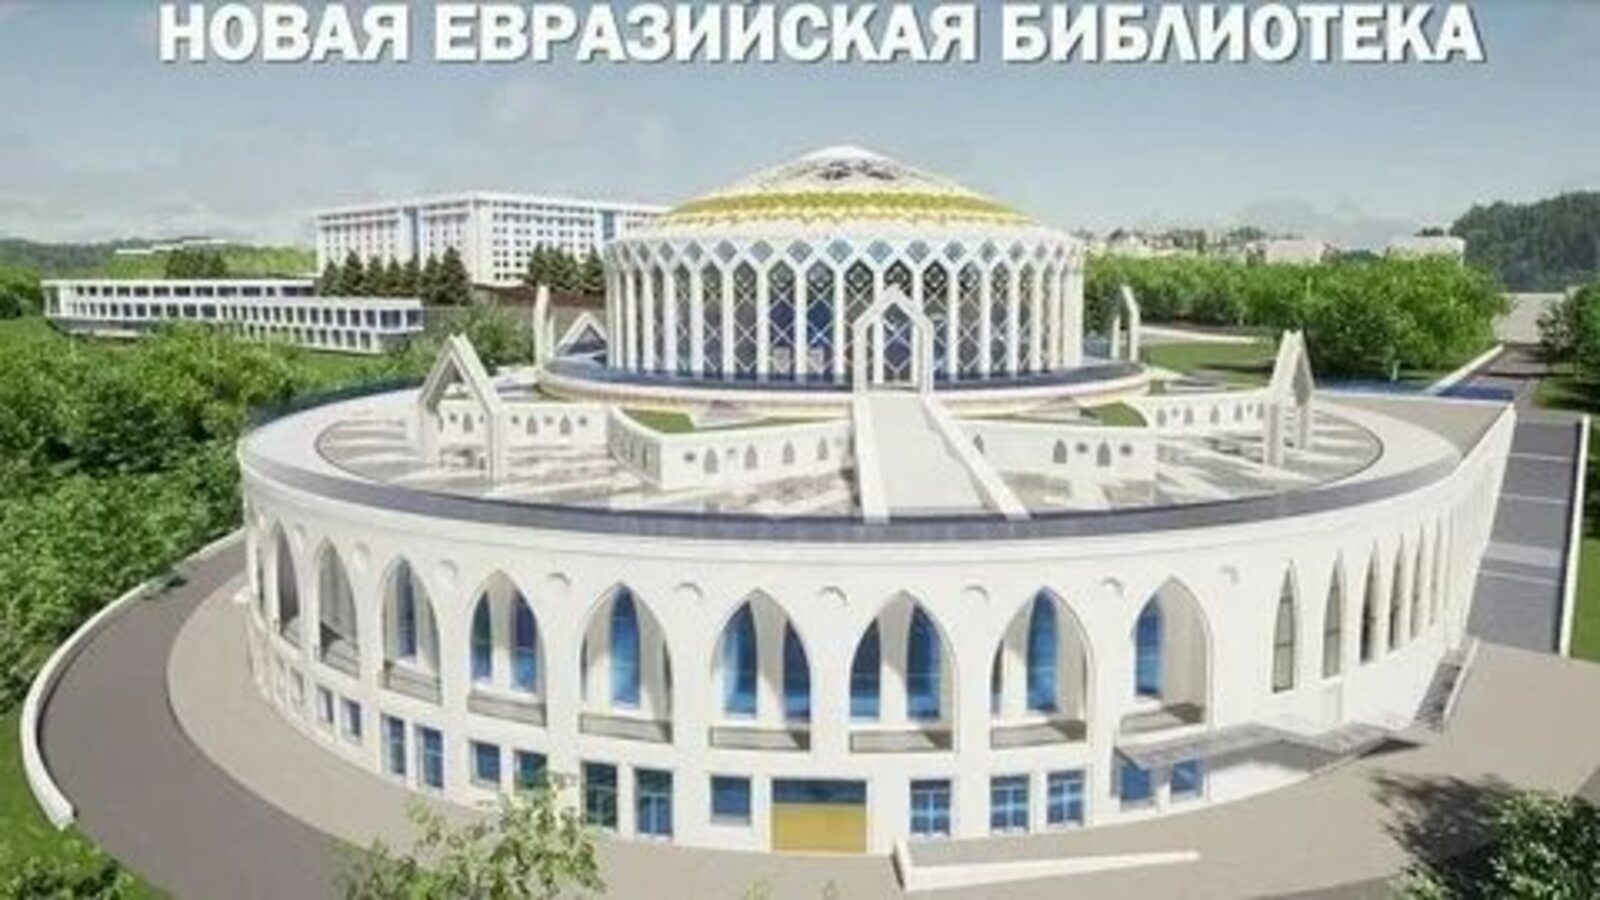 Эксперты: Евразийская библиотека в Башкирии может стать новым символом Уфы и объединяющим началом мира на стыке Европы и Азии